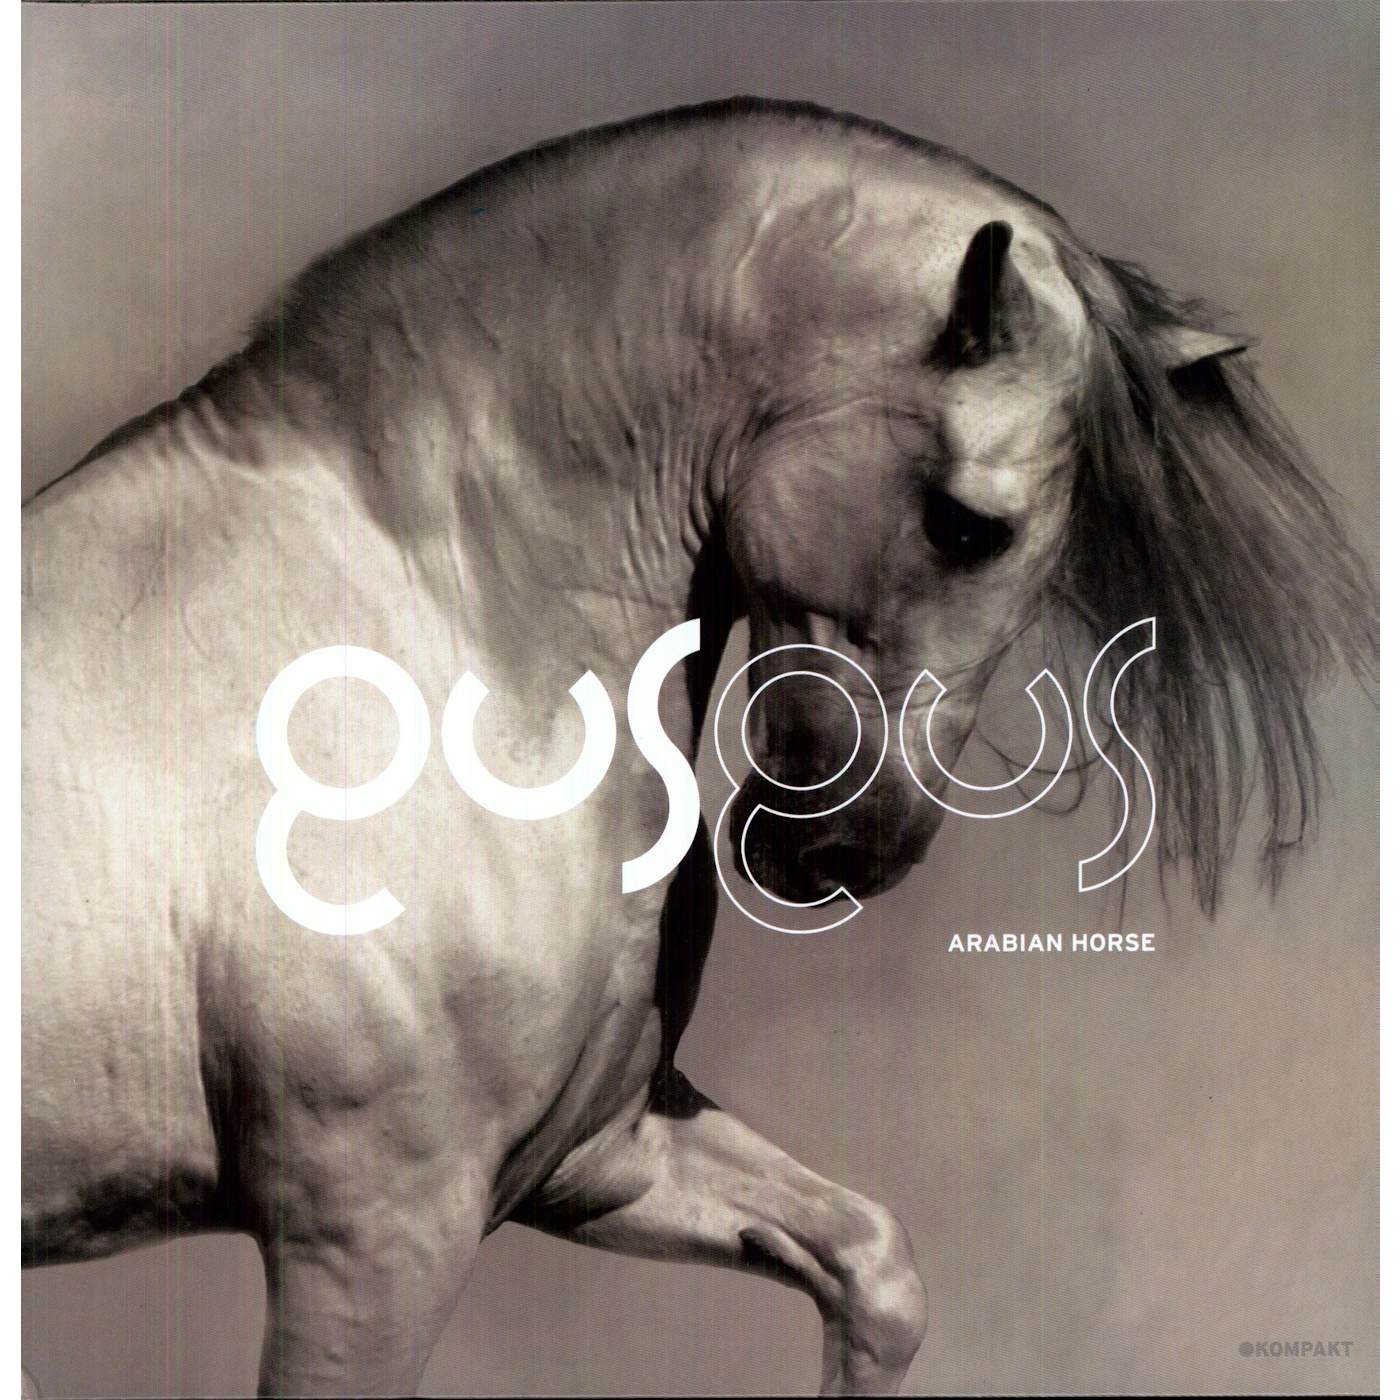 GusGus Arabian Horse Vinyl Record